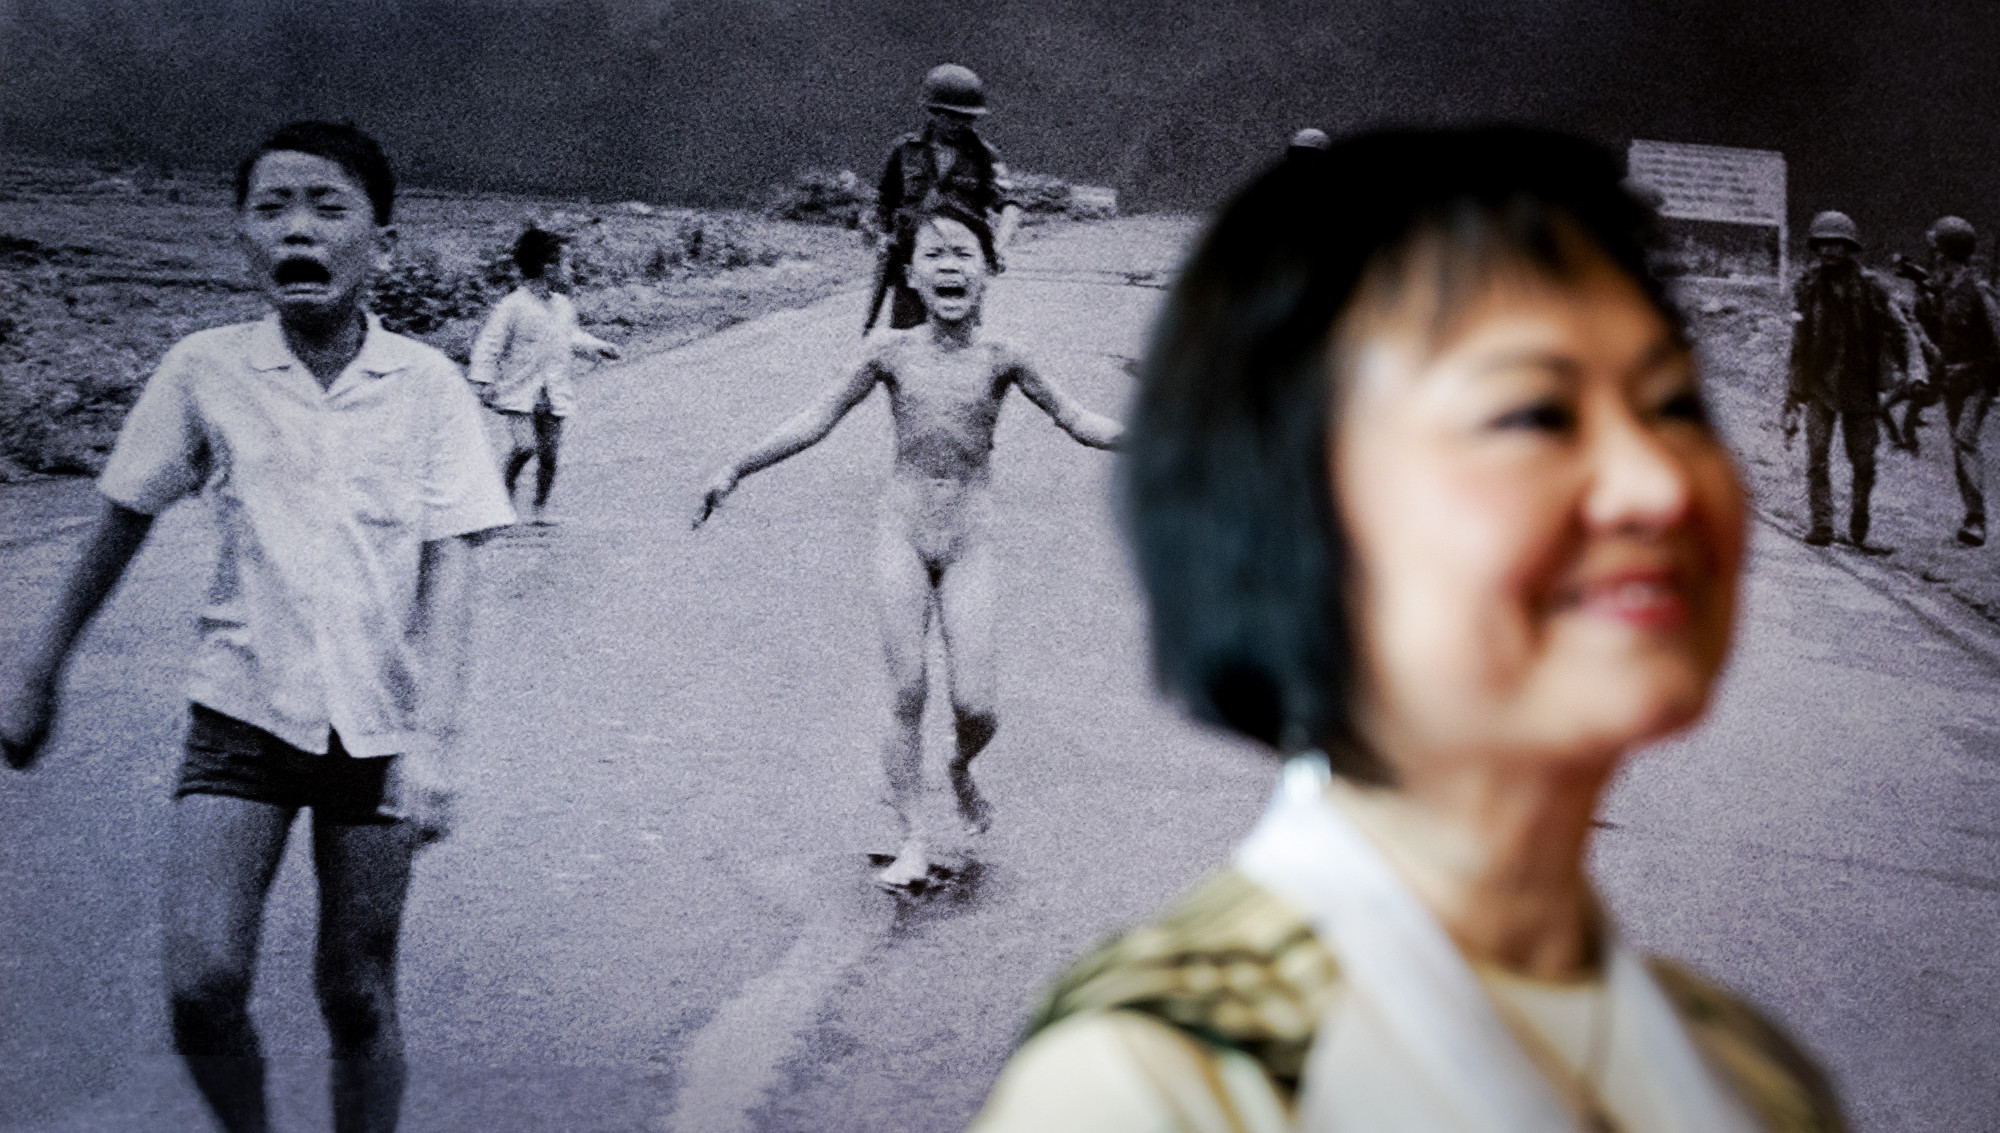 Megkapta utolsó bőrkezelését a világ egyik leghíresebb fényképén szereplő "napalm lány"